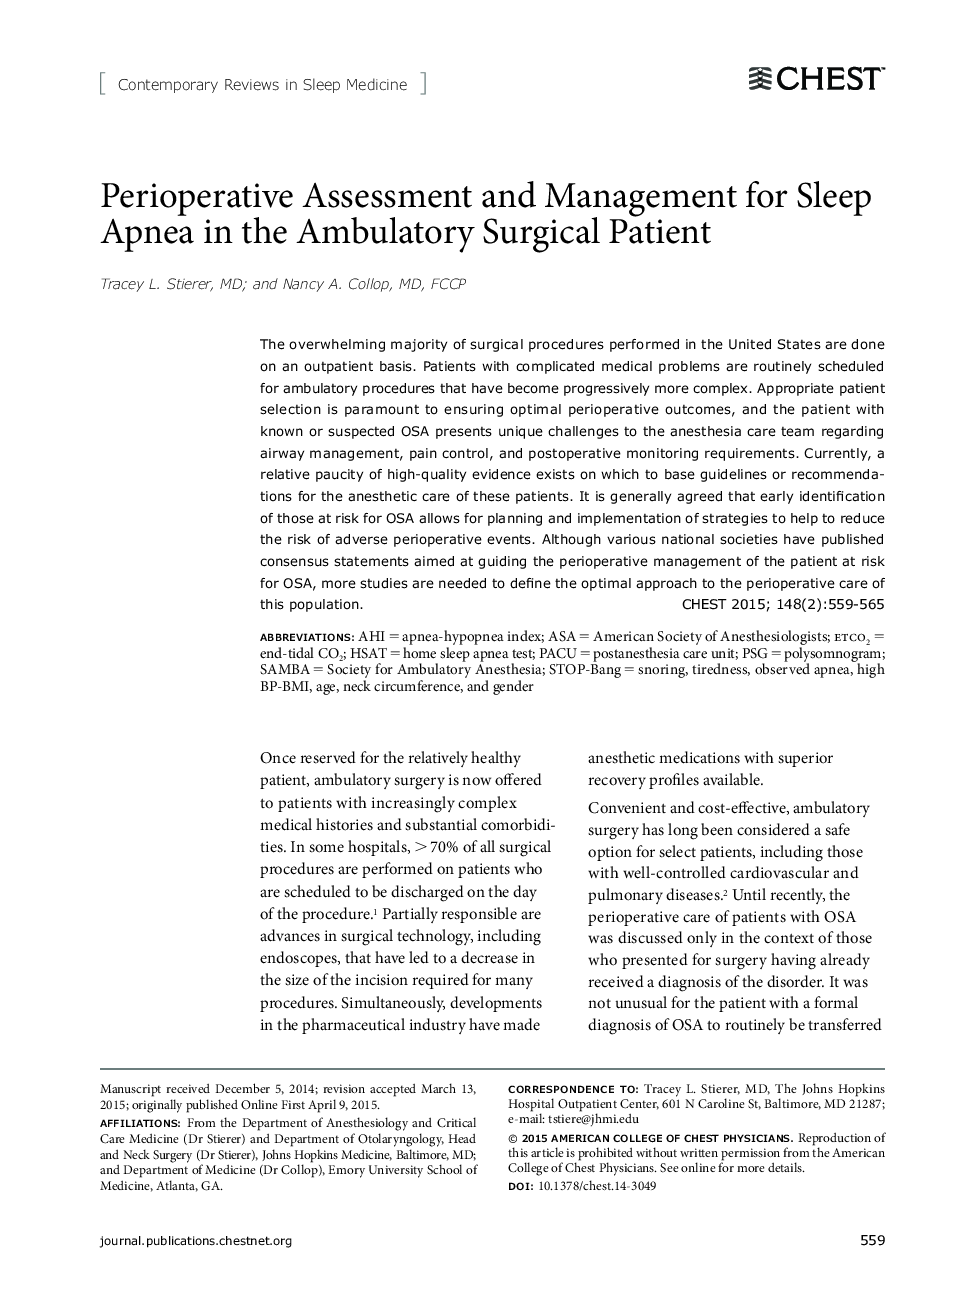 ارزیابی و مدیریت درمانی آپنه خواب در بیمار جراحی آمبولی 